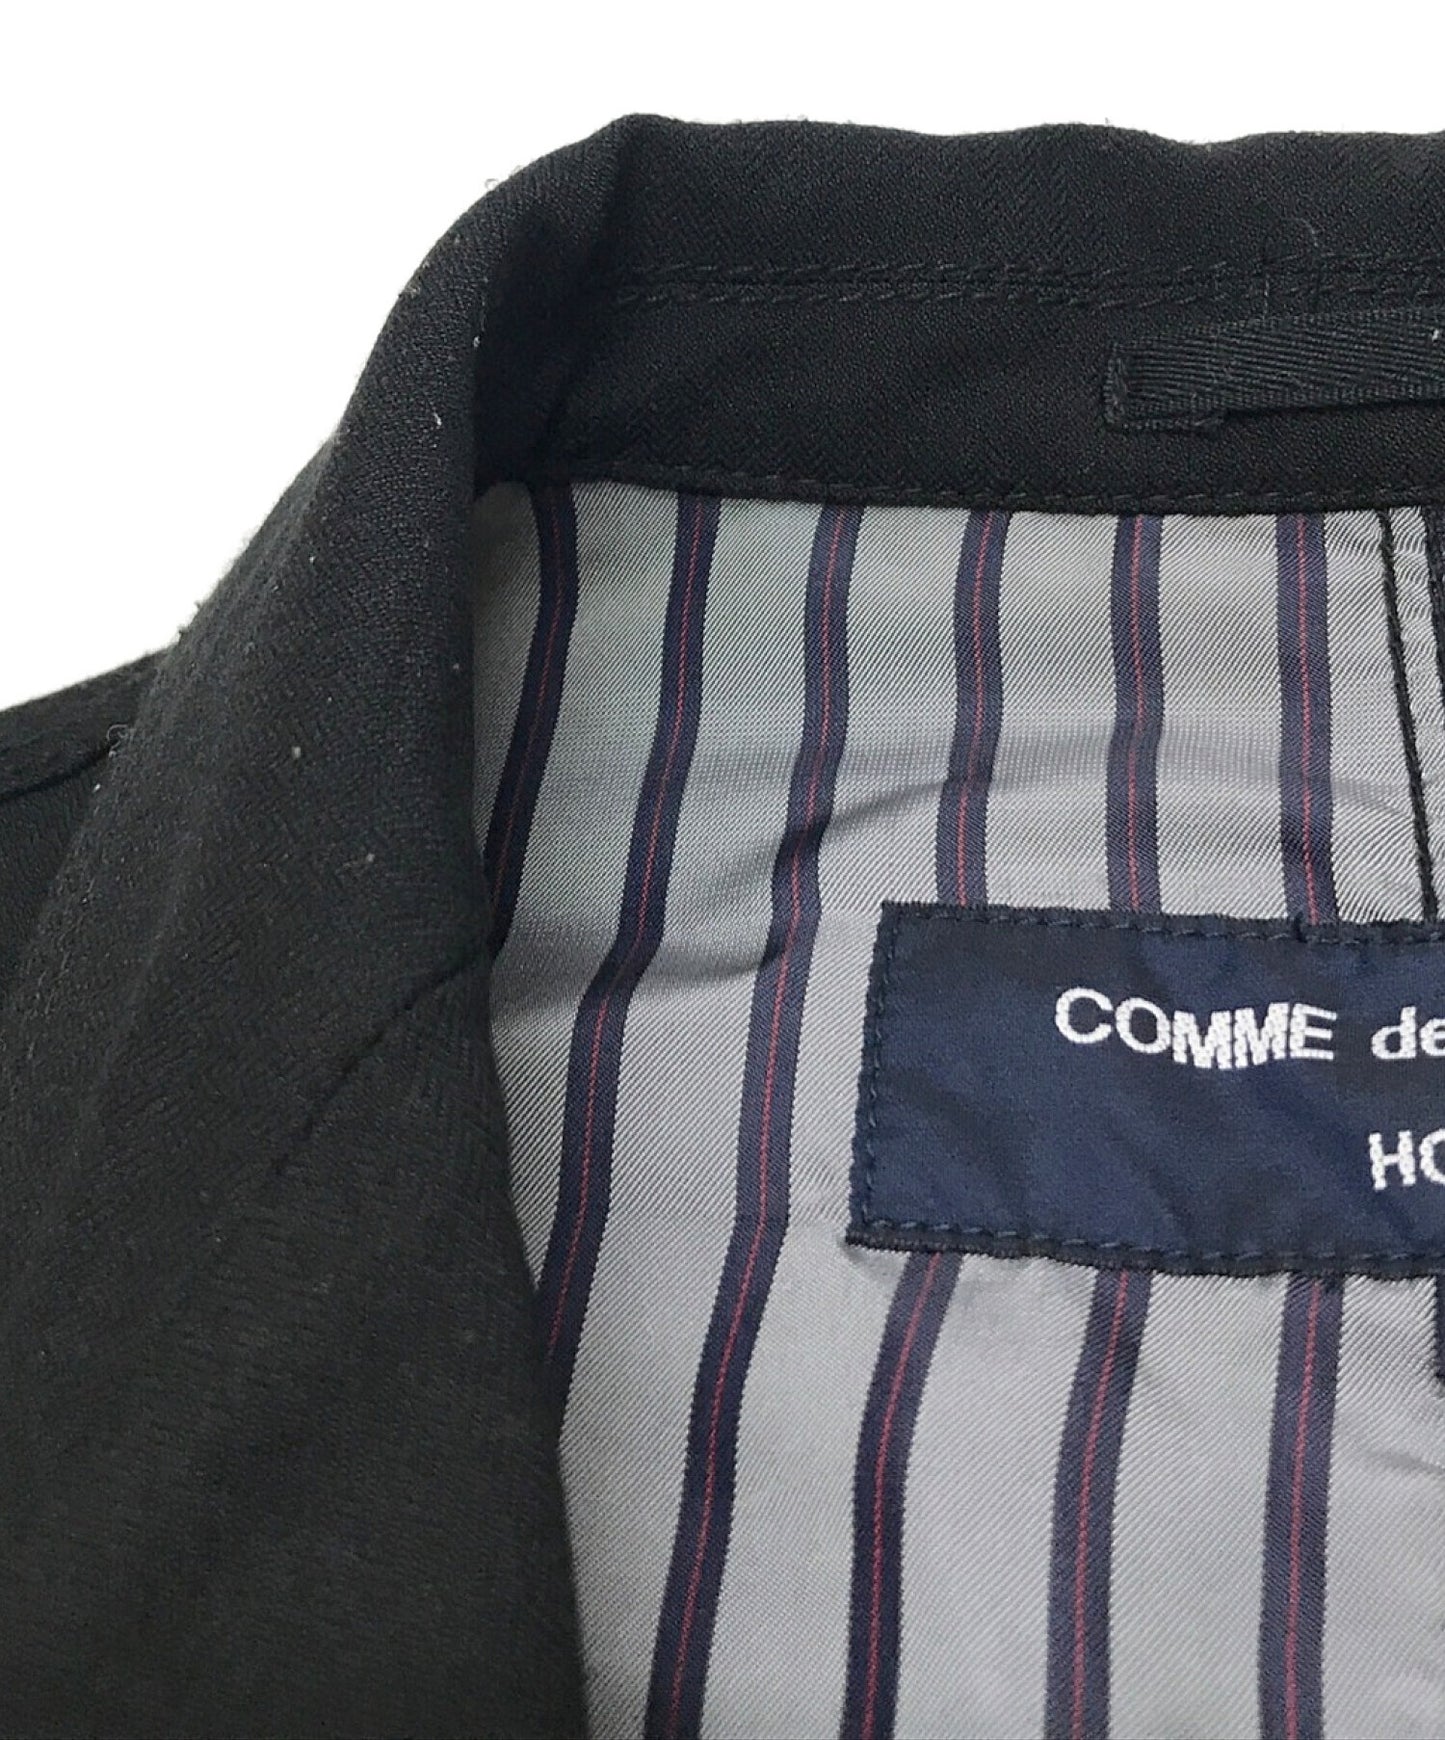 Comme des Garcons ผลิตภัณฑ์ย้อมสีพลาสติกหดตัวเสื้อแจ็คเก็ต HQ-J007